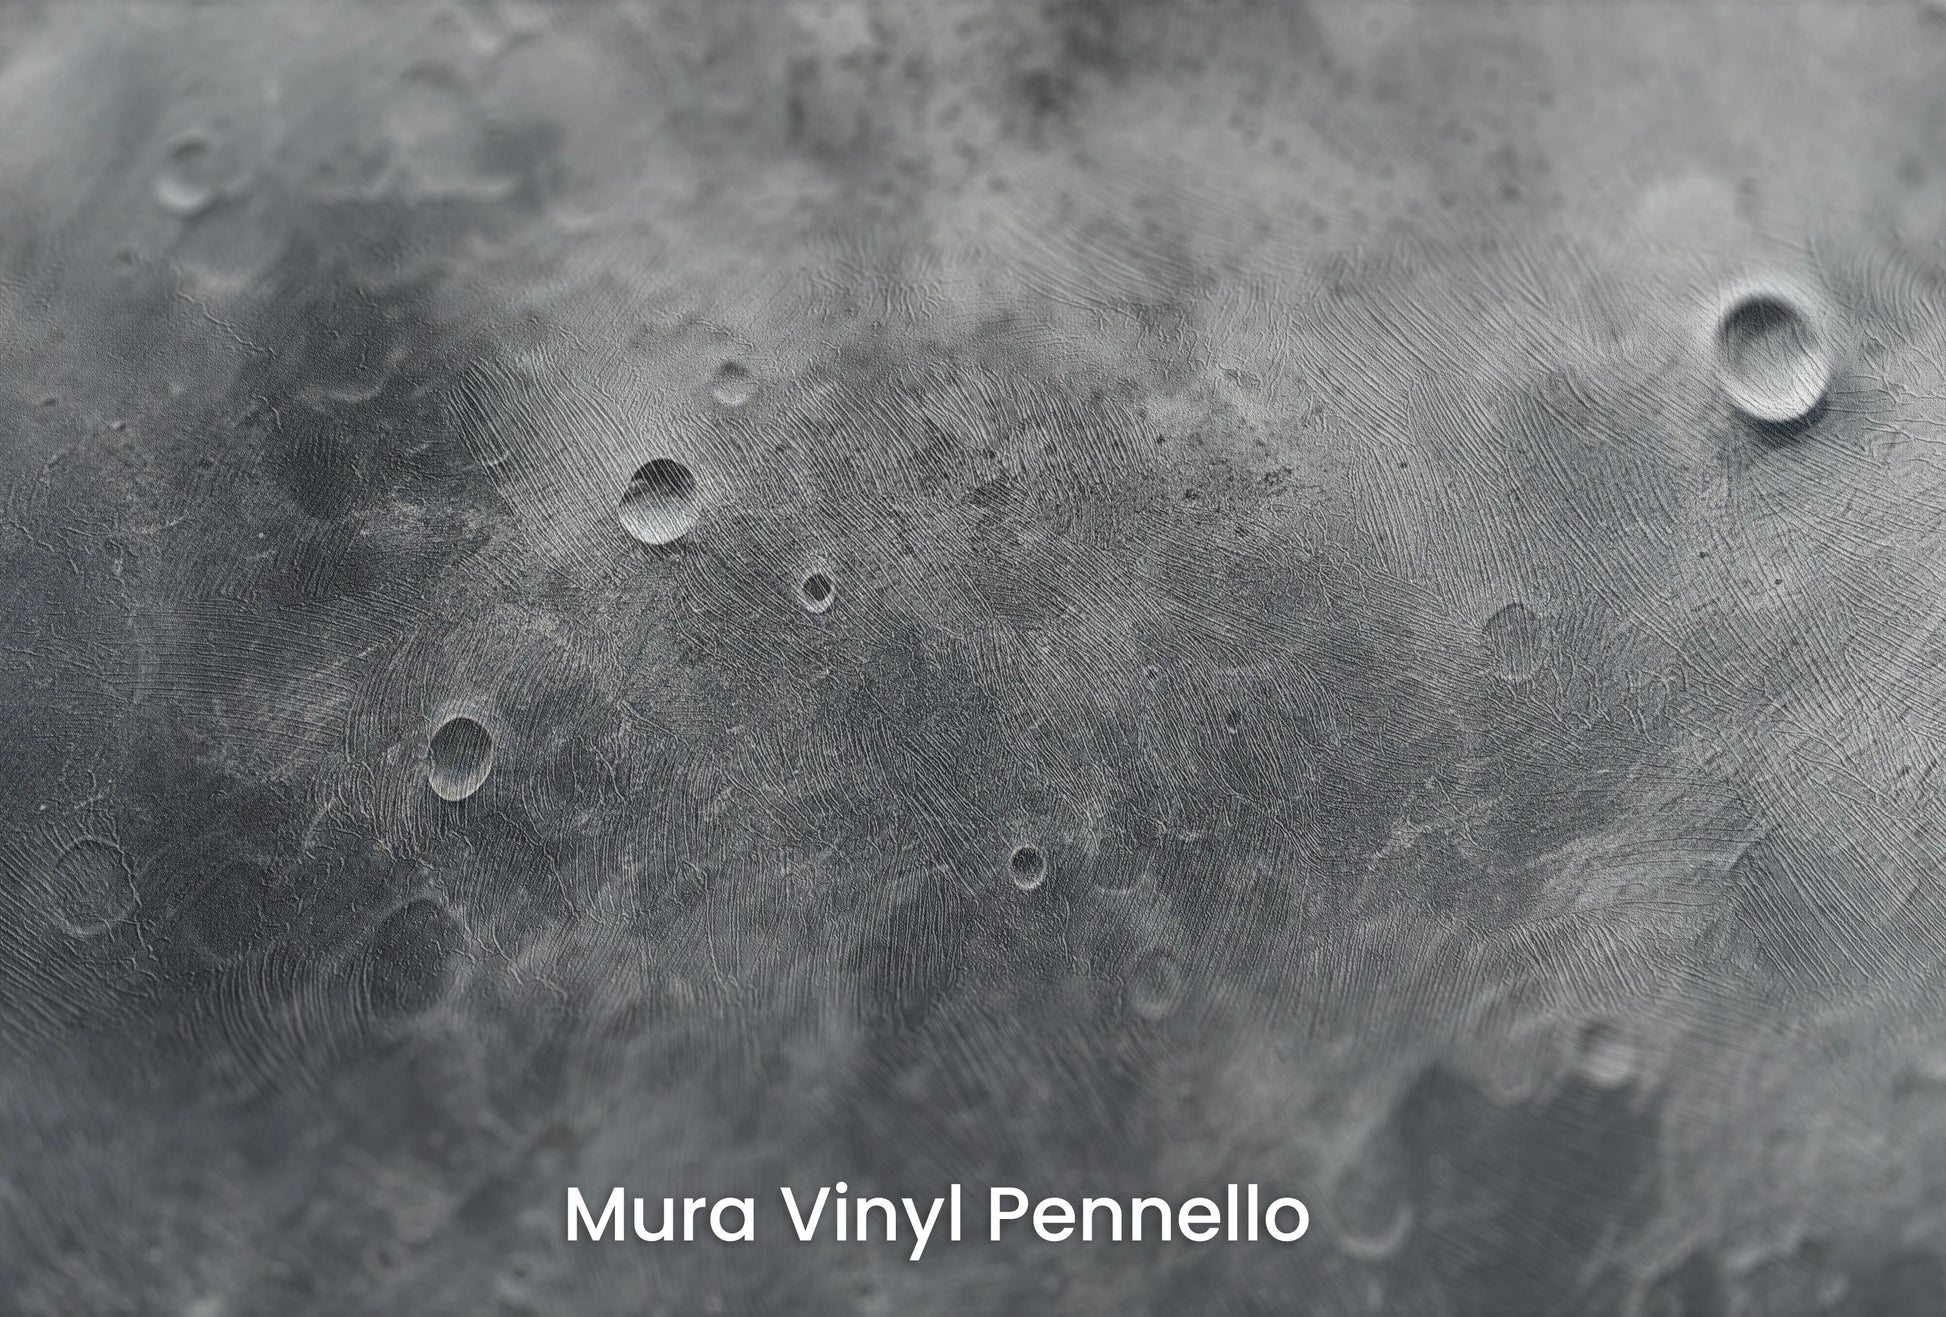 Zbliżenie na artystyczną fototapetę o nazwie Jovian Vortex na podłożu Mura Vinyl Pennello - faktura pociągnięć pędzla malarskiego.